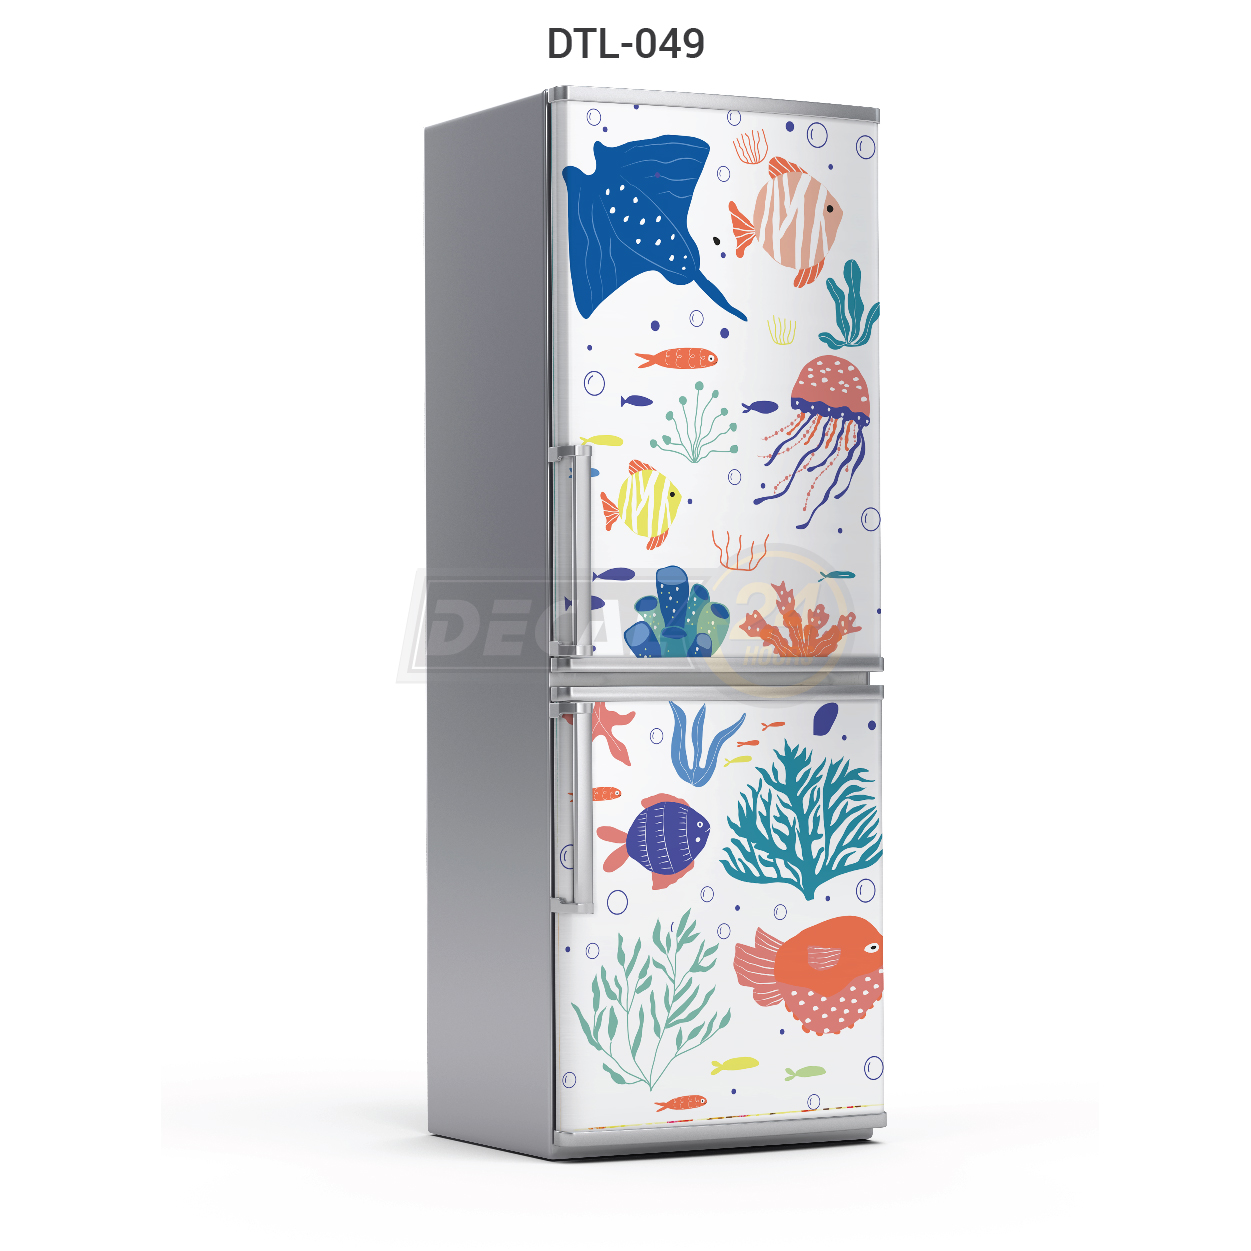 Decal dán trang trí tủ lạnh, miếng dán tủ lạnh chất liệu decal cao cấp chống thấm nước đủ kích thước Decal24h DTL-049